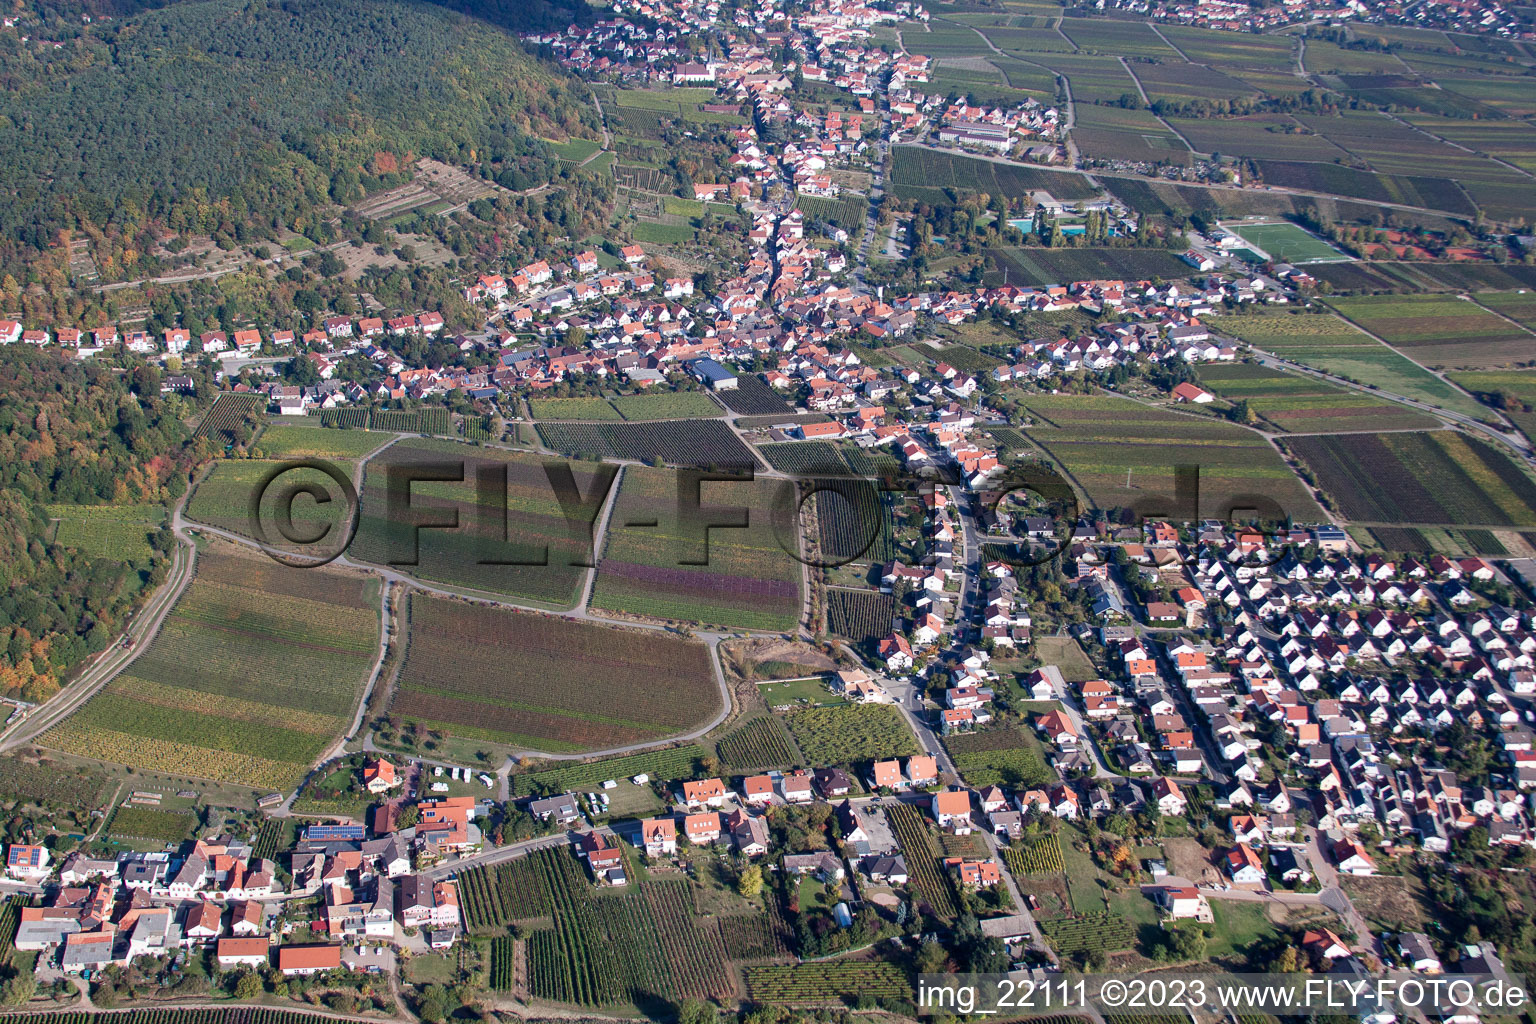 Oblique view of District Diedesfeld in Neustadt an der Weinstraße in the state Rhineland-Palatinate, Germany